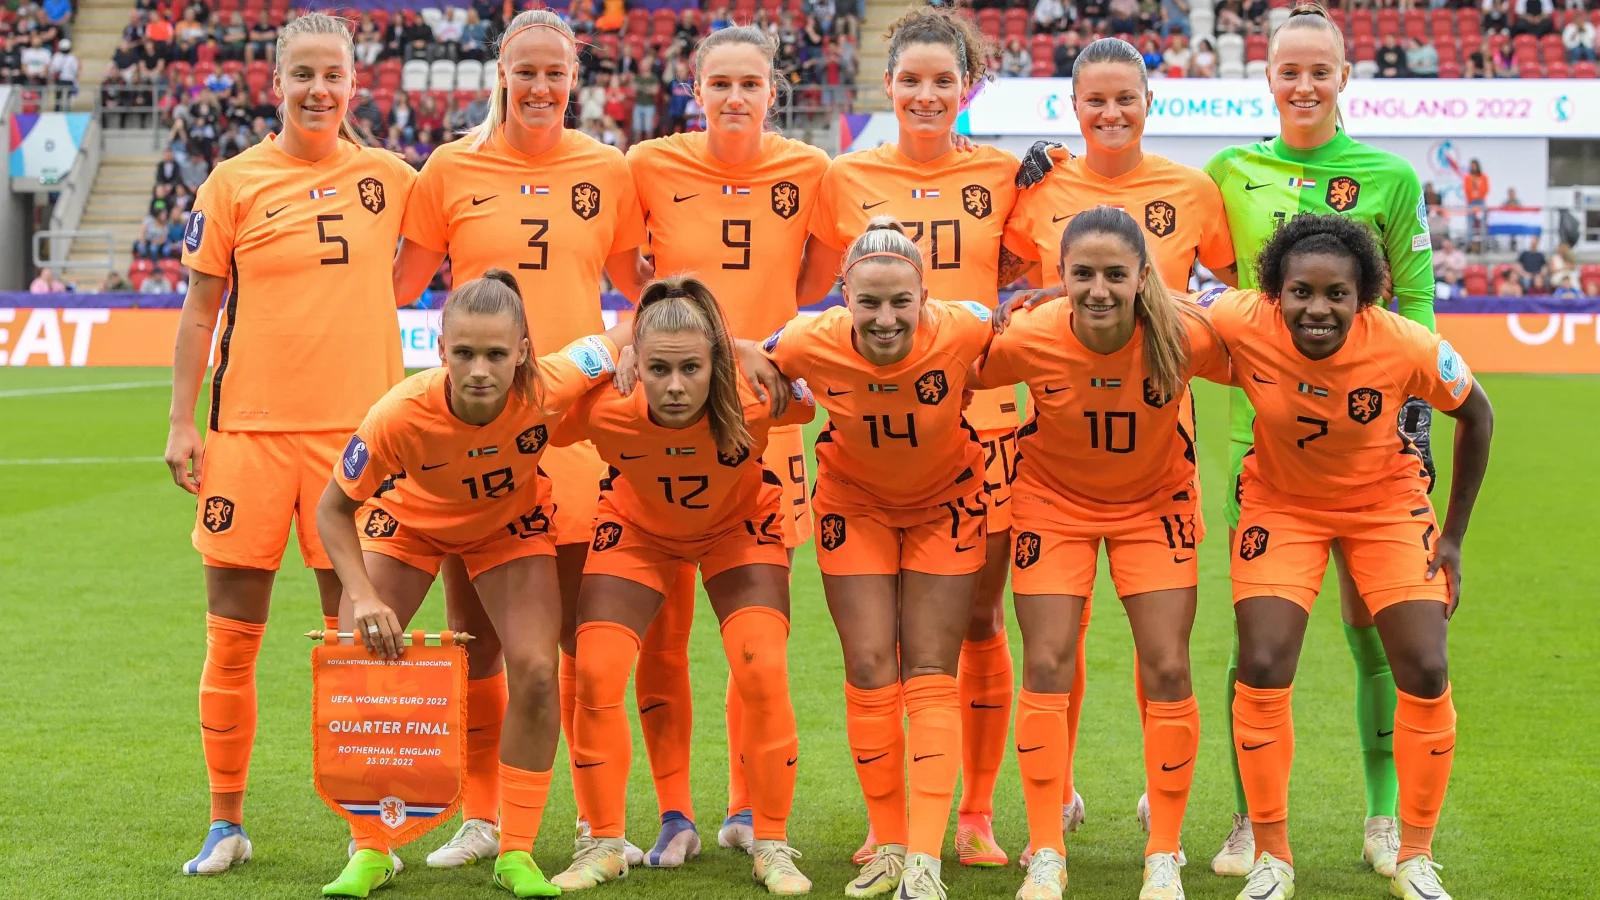 Oranjeleeuwinnen teamfoto, het WK voetbal begint deze week. Het WK-prijzengeld is ongelijk